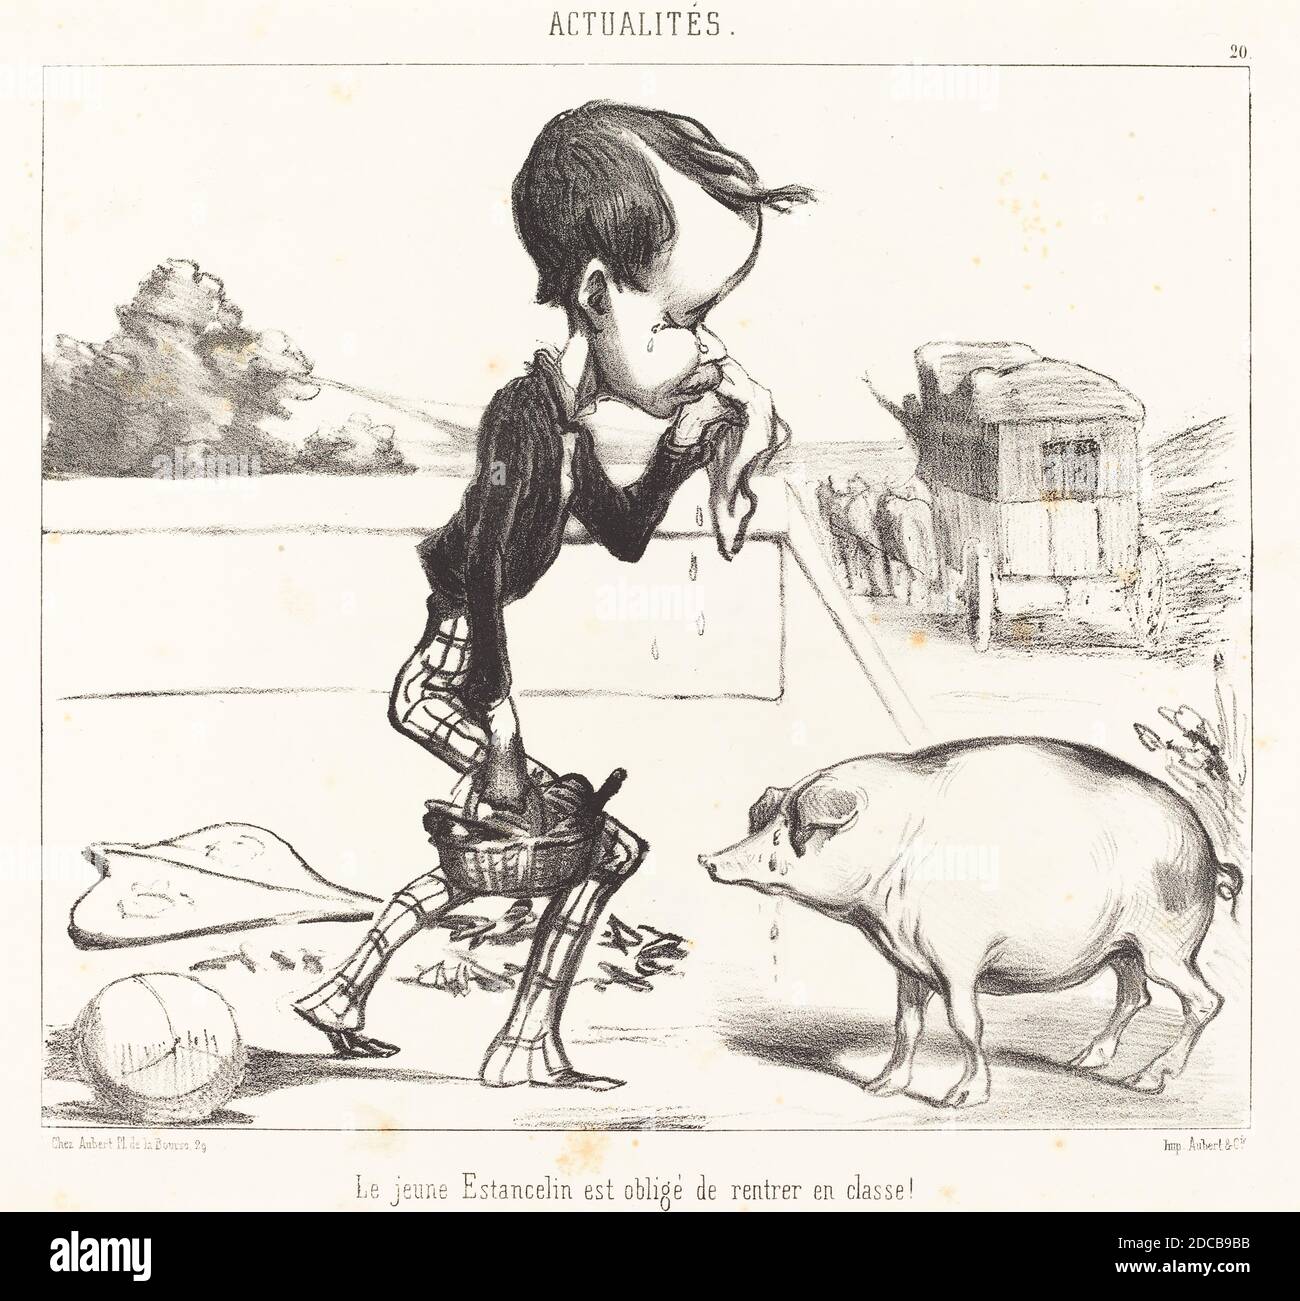 Honoré Daumier, (artista), Francese, 1808 - 1879, le Jeune Estancelin est obligé de rentrer en classe!, Actualités, (serie), 1849, litografia Foto Stock